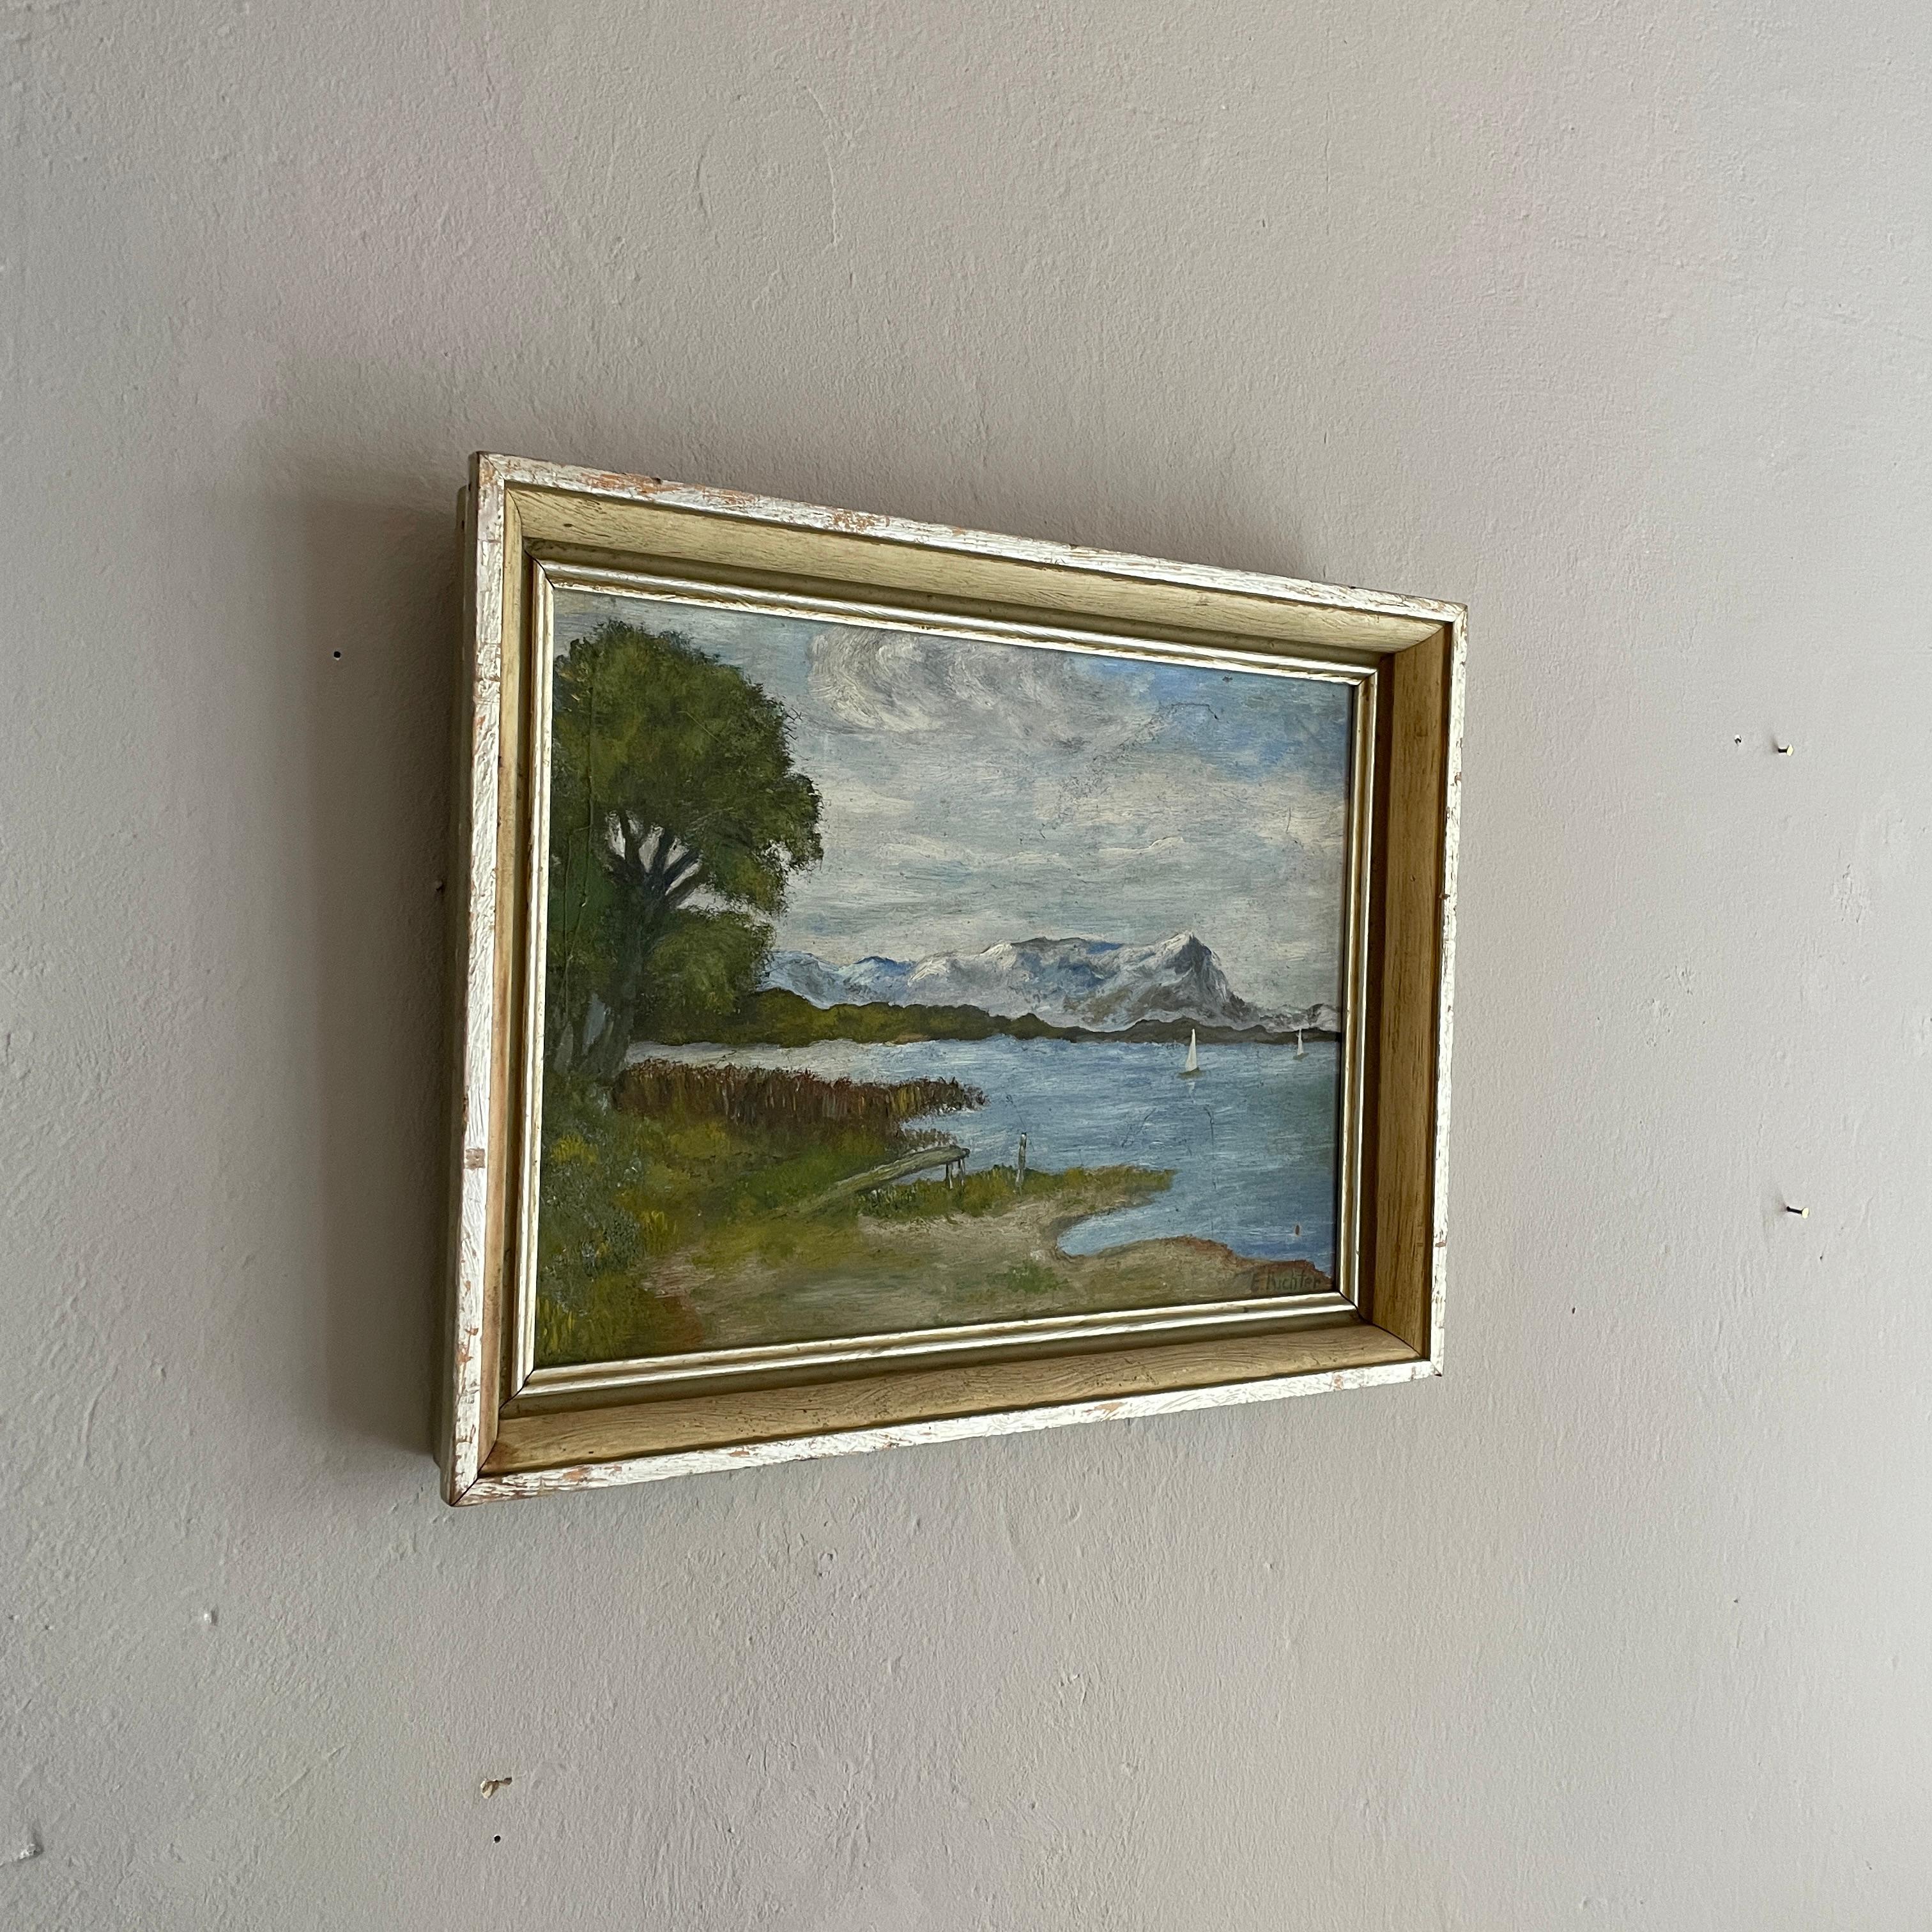 Cette peinture impressionniste, montre un paysage avec un lac en Autriche. Sur le lac se trouvent des bateaux et, en arrière-plan, vous pouvez voir les montagnes enneigées.
Une image très belle et cohérente.
Il a été peint dans les années 1930 à